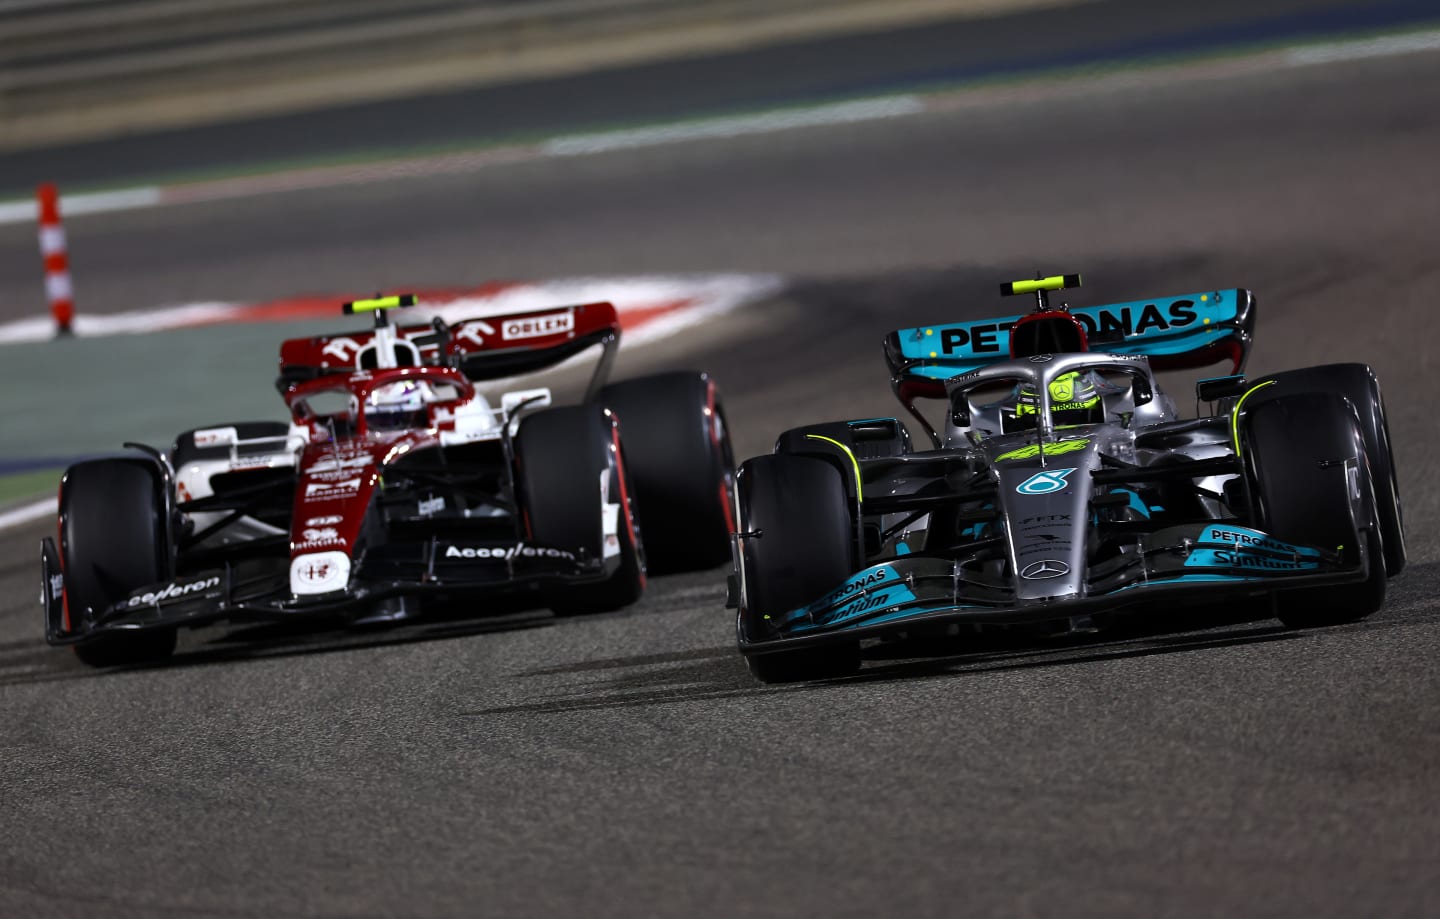 BAHRAIN, BAHRAIN - MARCH 20: Lewis Hamilton of Great Britain driving the (44) Mercedes AMG Petronas